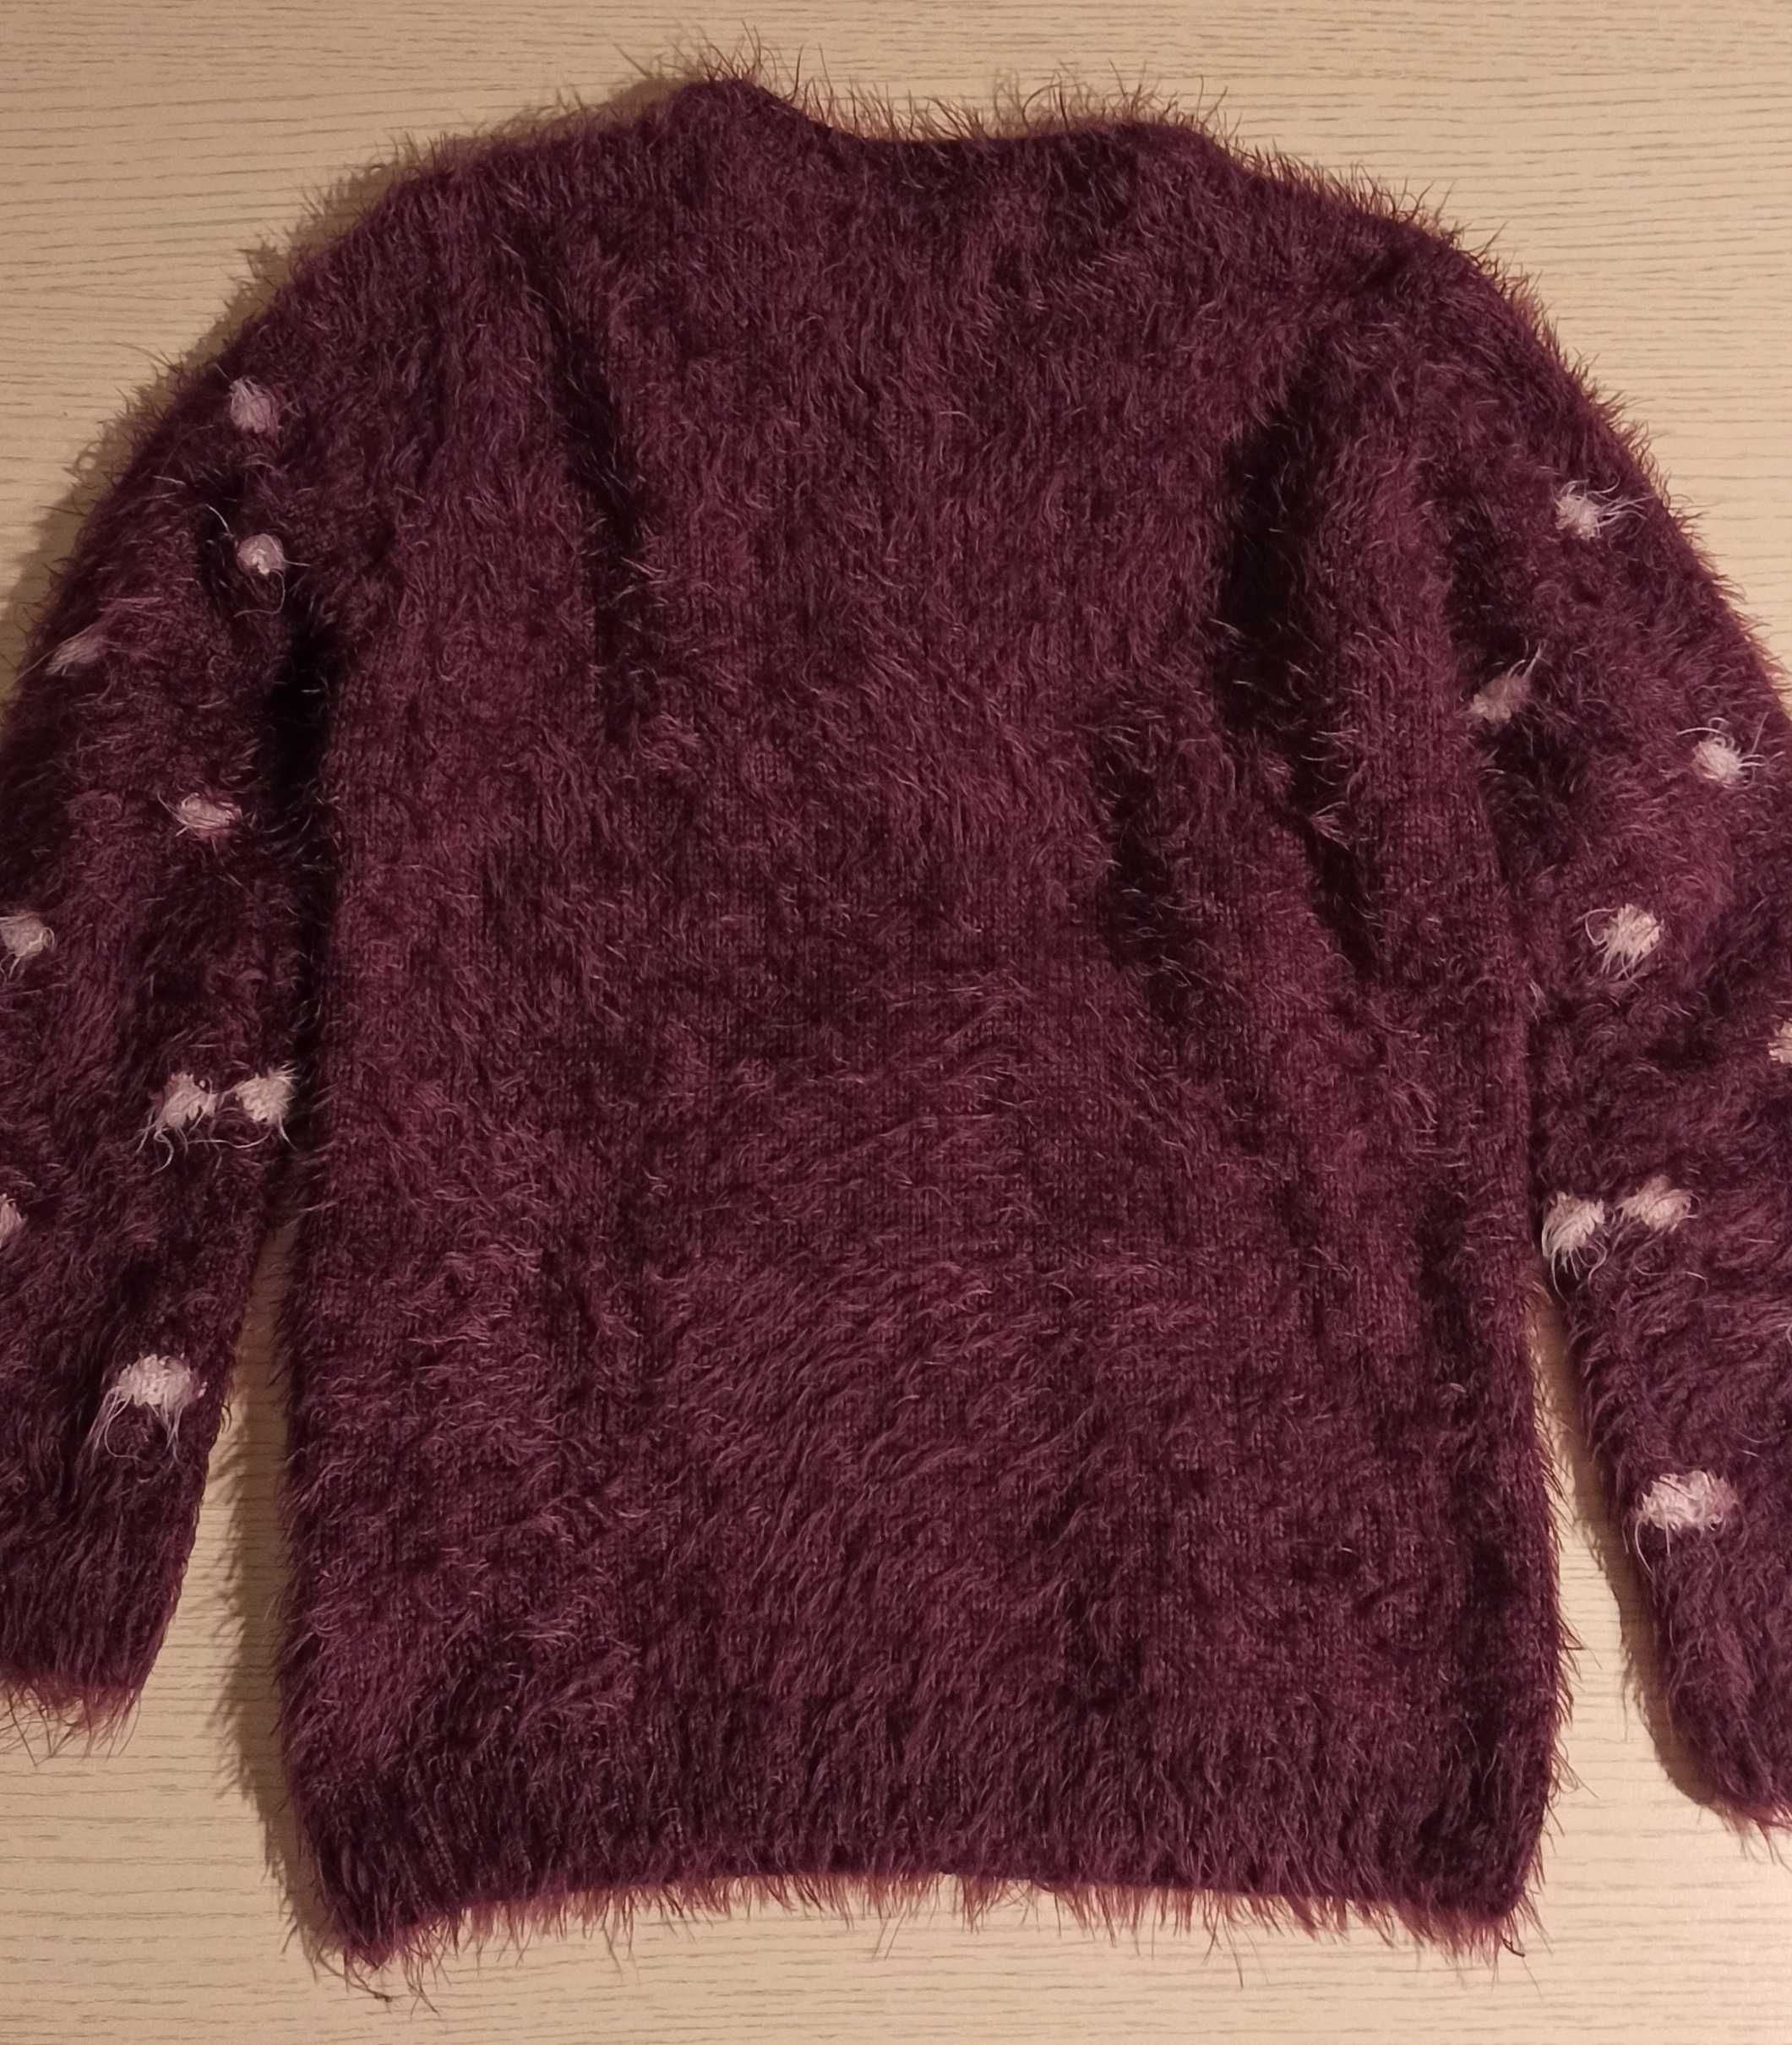 Sweter dziewczęcy 134, bordowy w grochy, gruby